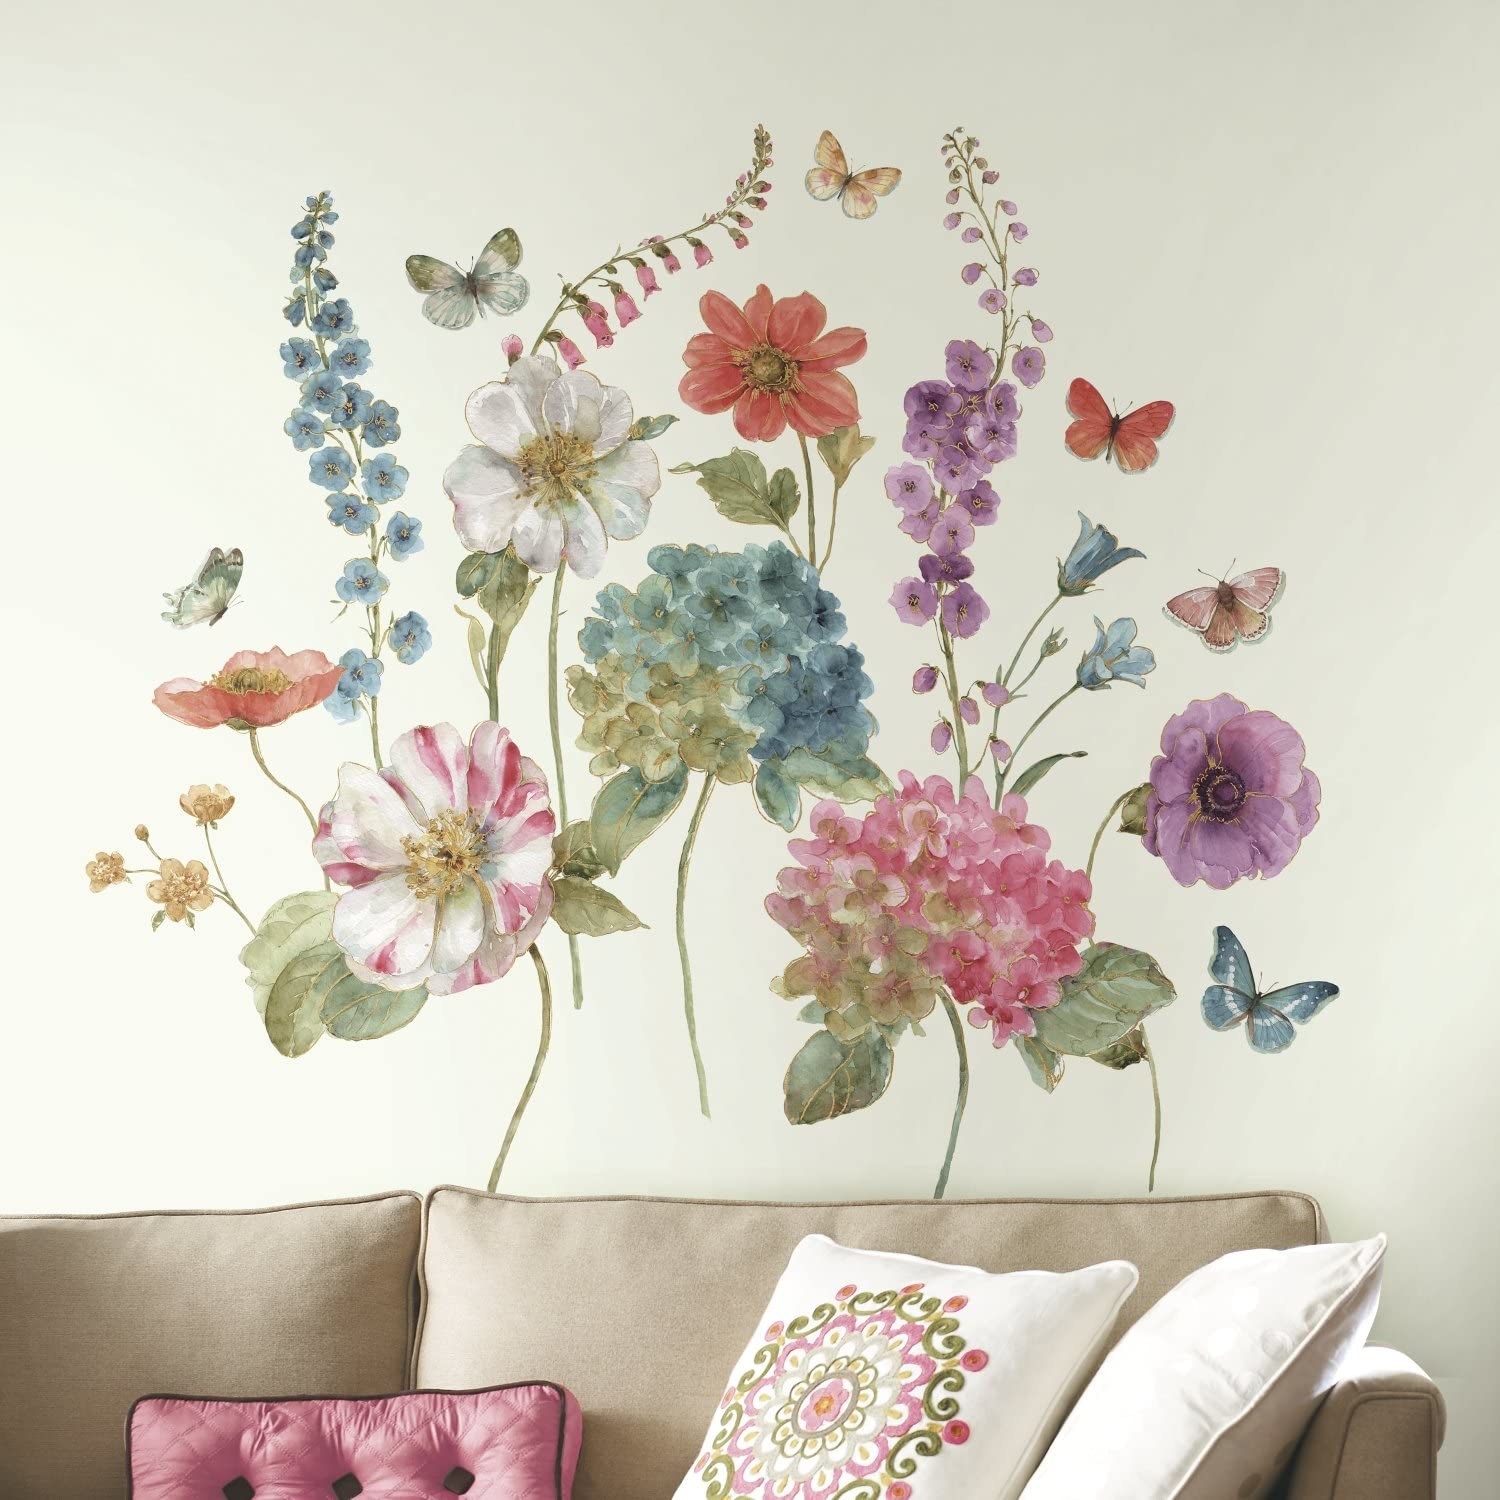 25 vinilos con diseños de flores para pegar en la pared